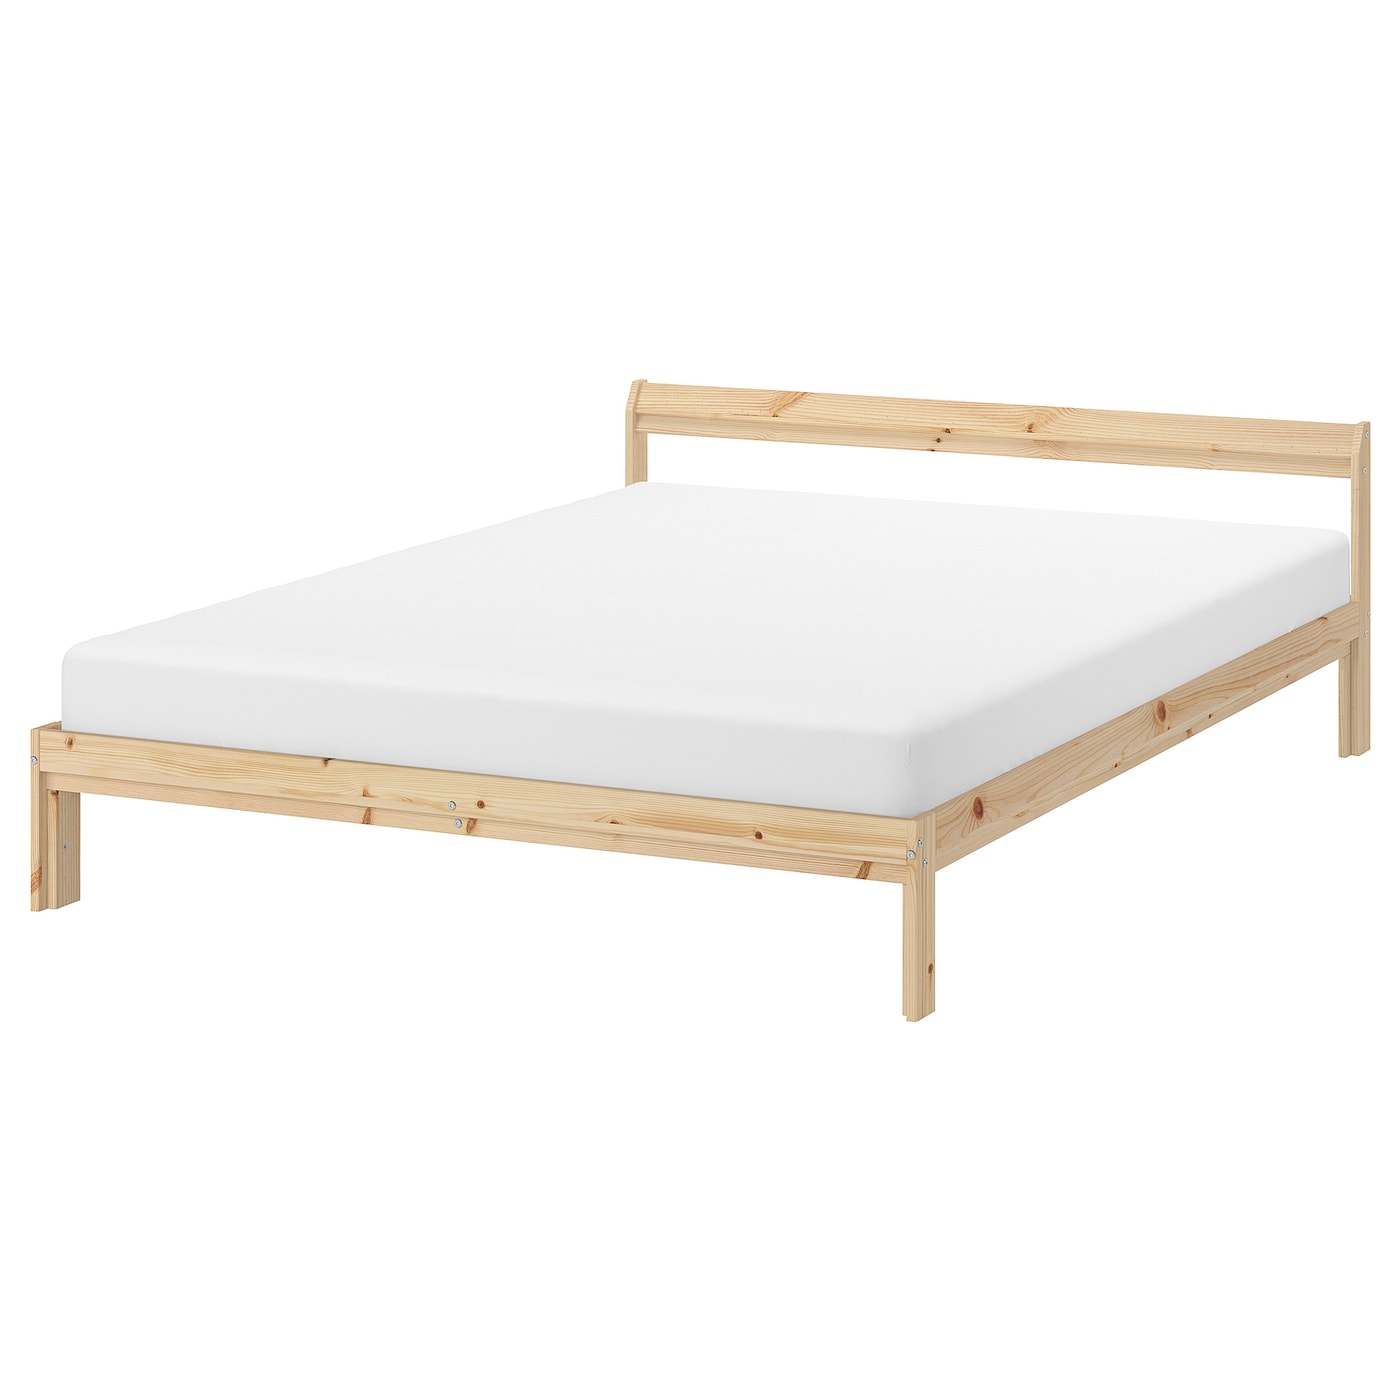 Каркас кровати - IKEA NEIDEN, 200х140 см, бежевый, НЕЙДЕН ИКЕА